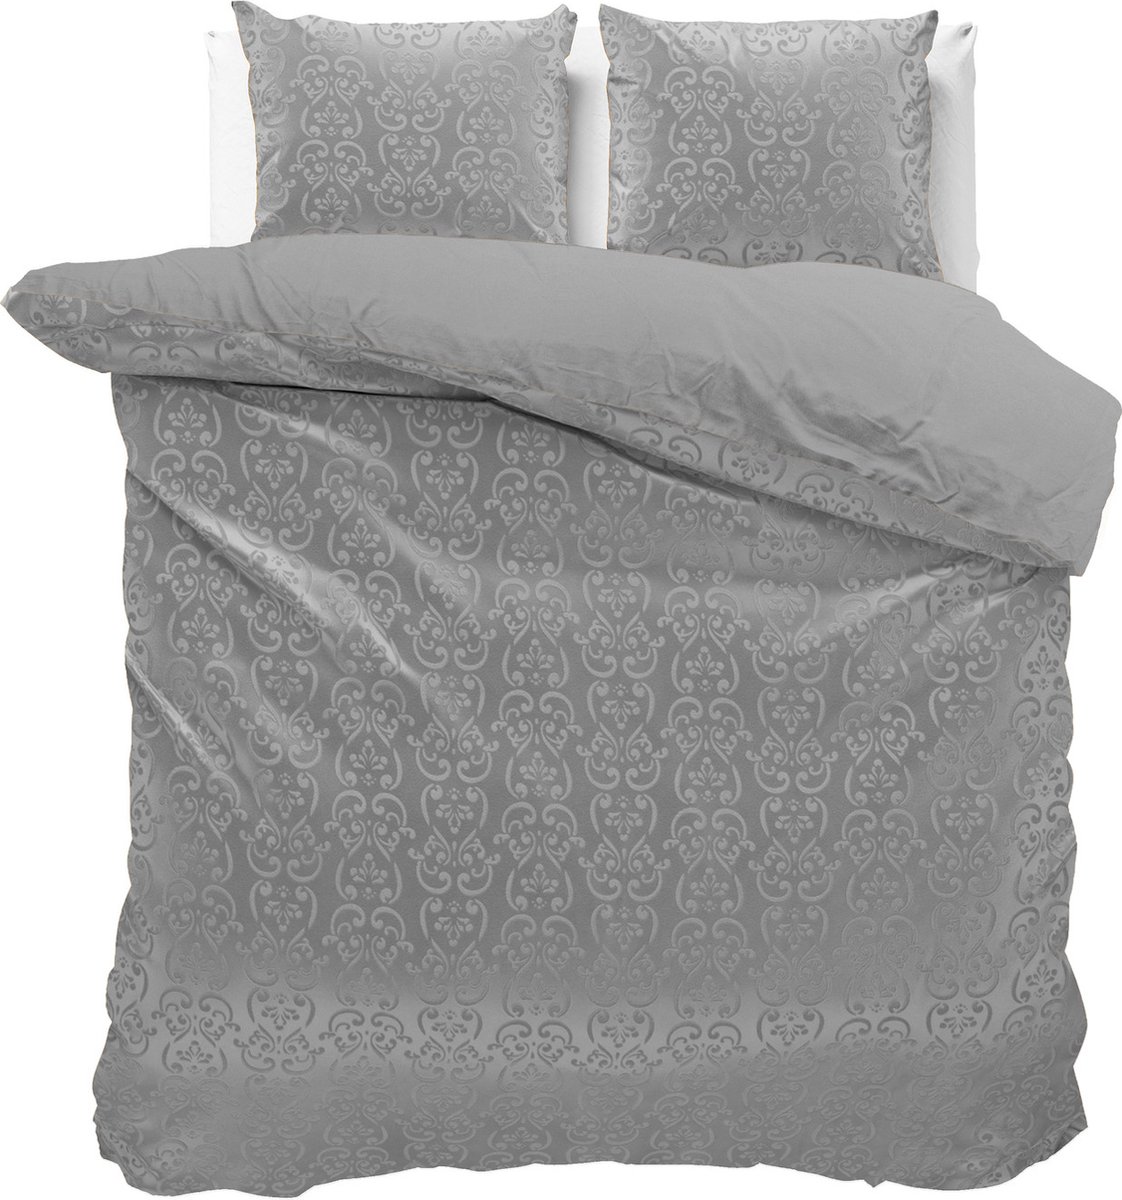 Fluweel zachte velvet dekbedovertrek embossed grijs - lits-jumeaux (240x200/220) - luxe uitstraling - handige drukknopsluiting